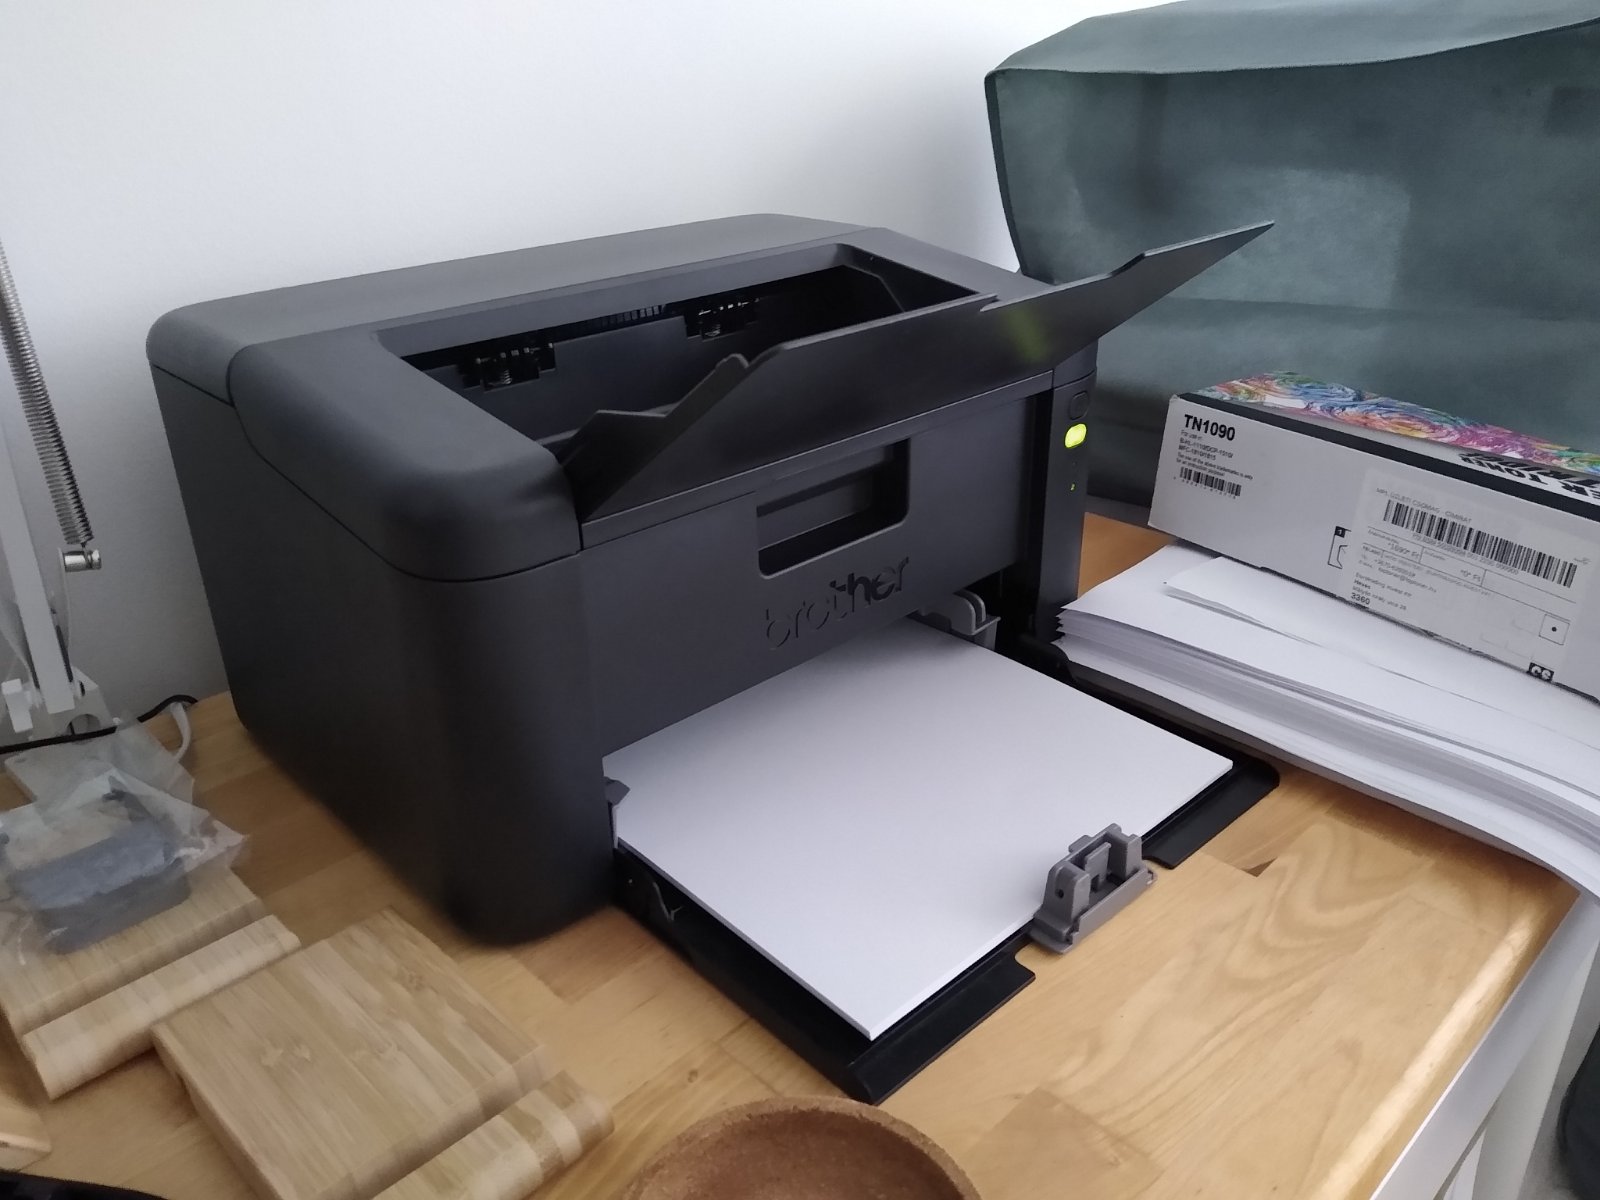 How Laser Printers Work